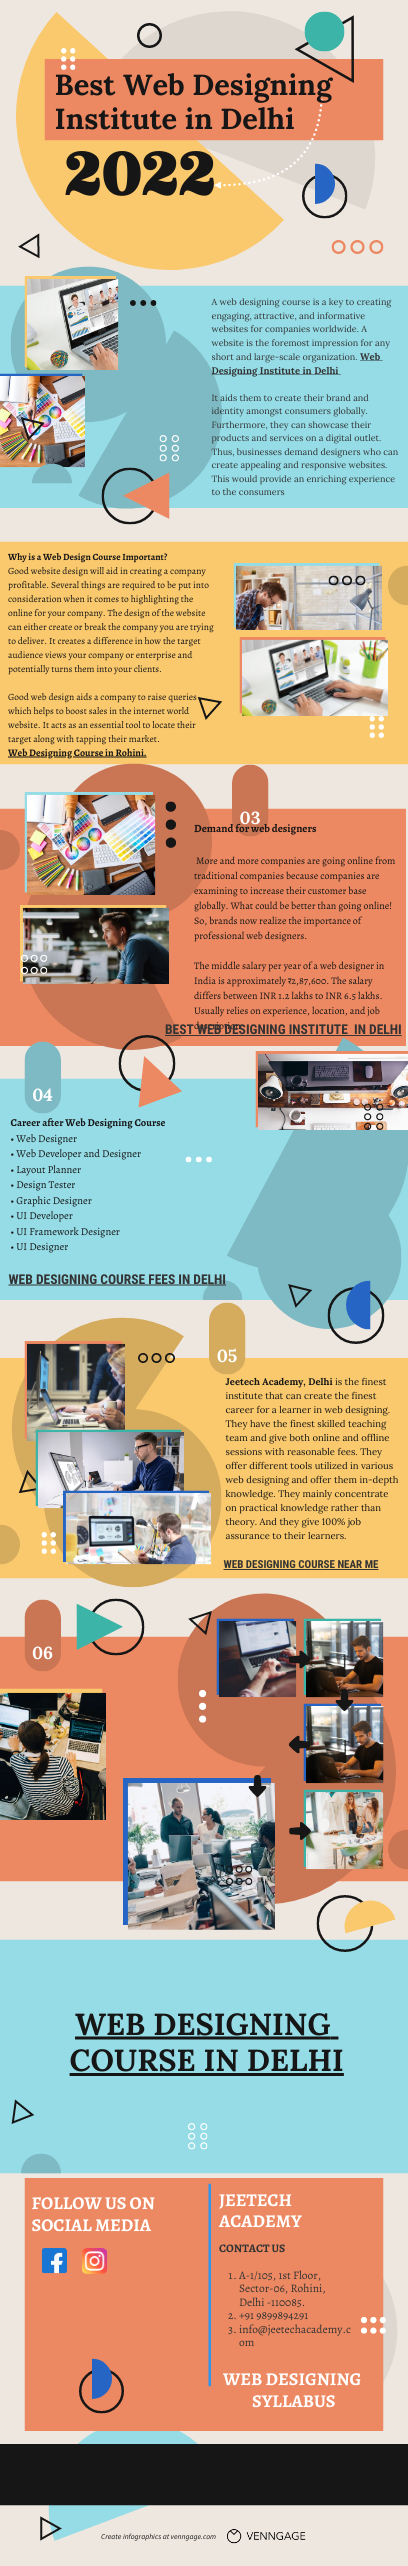 Best Web Designing Institute in Delhi